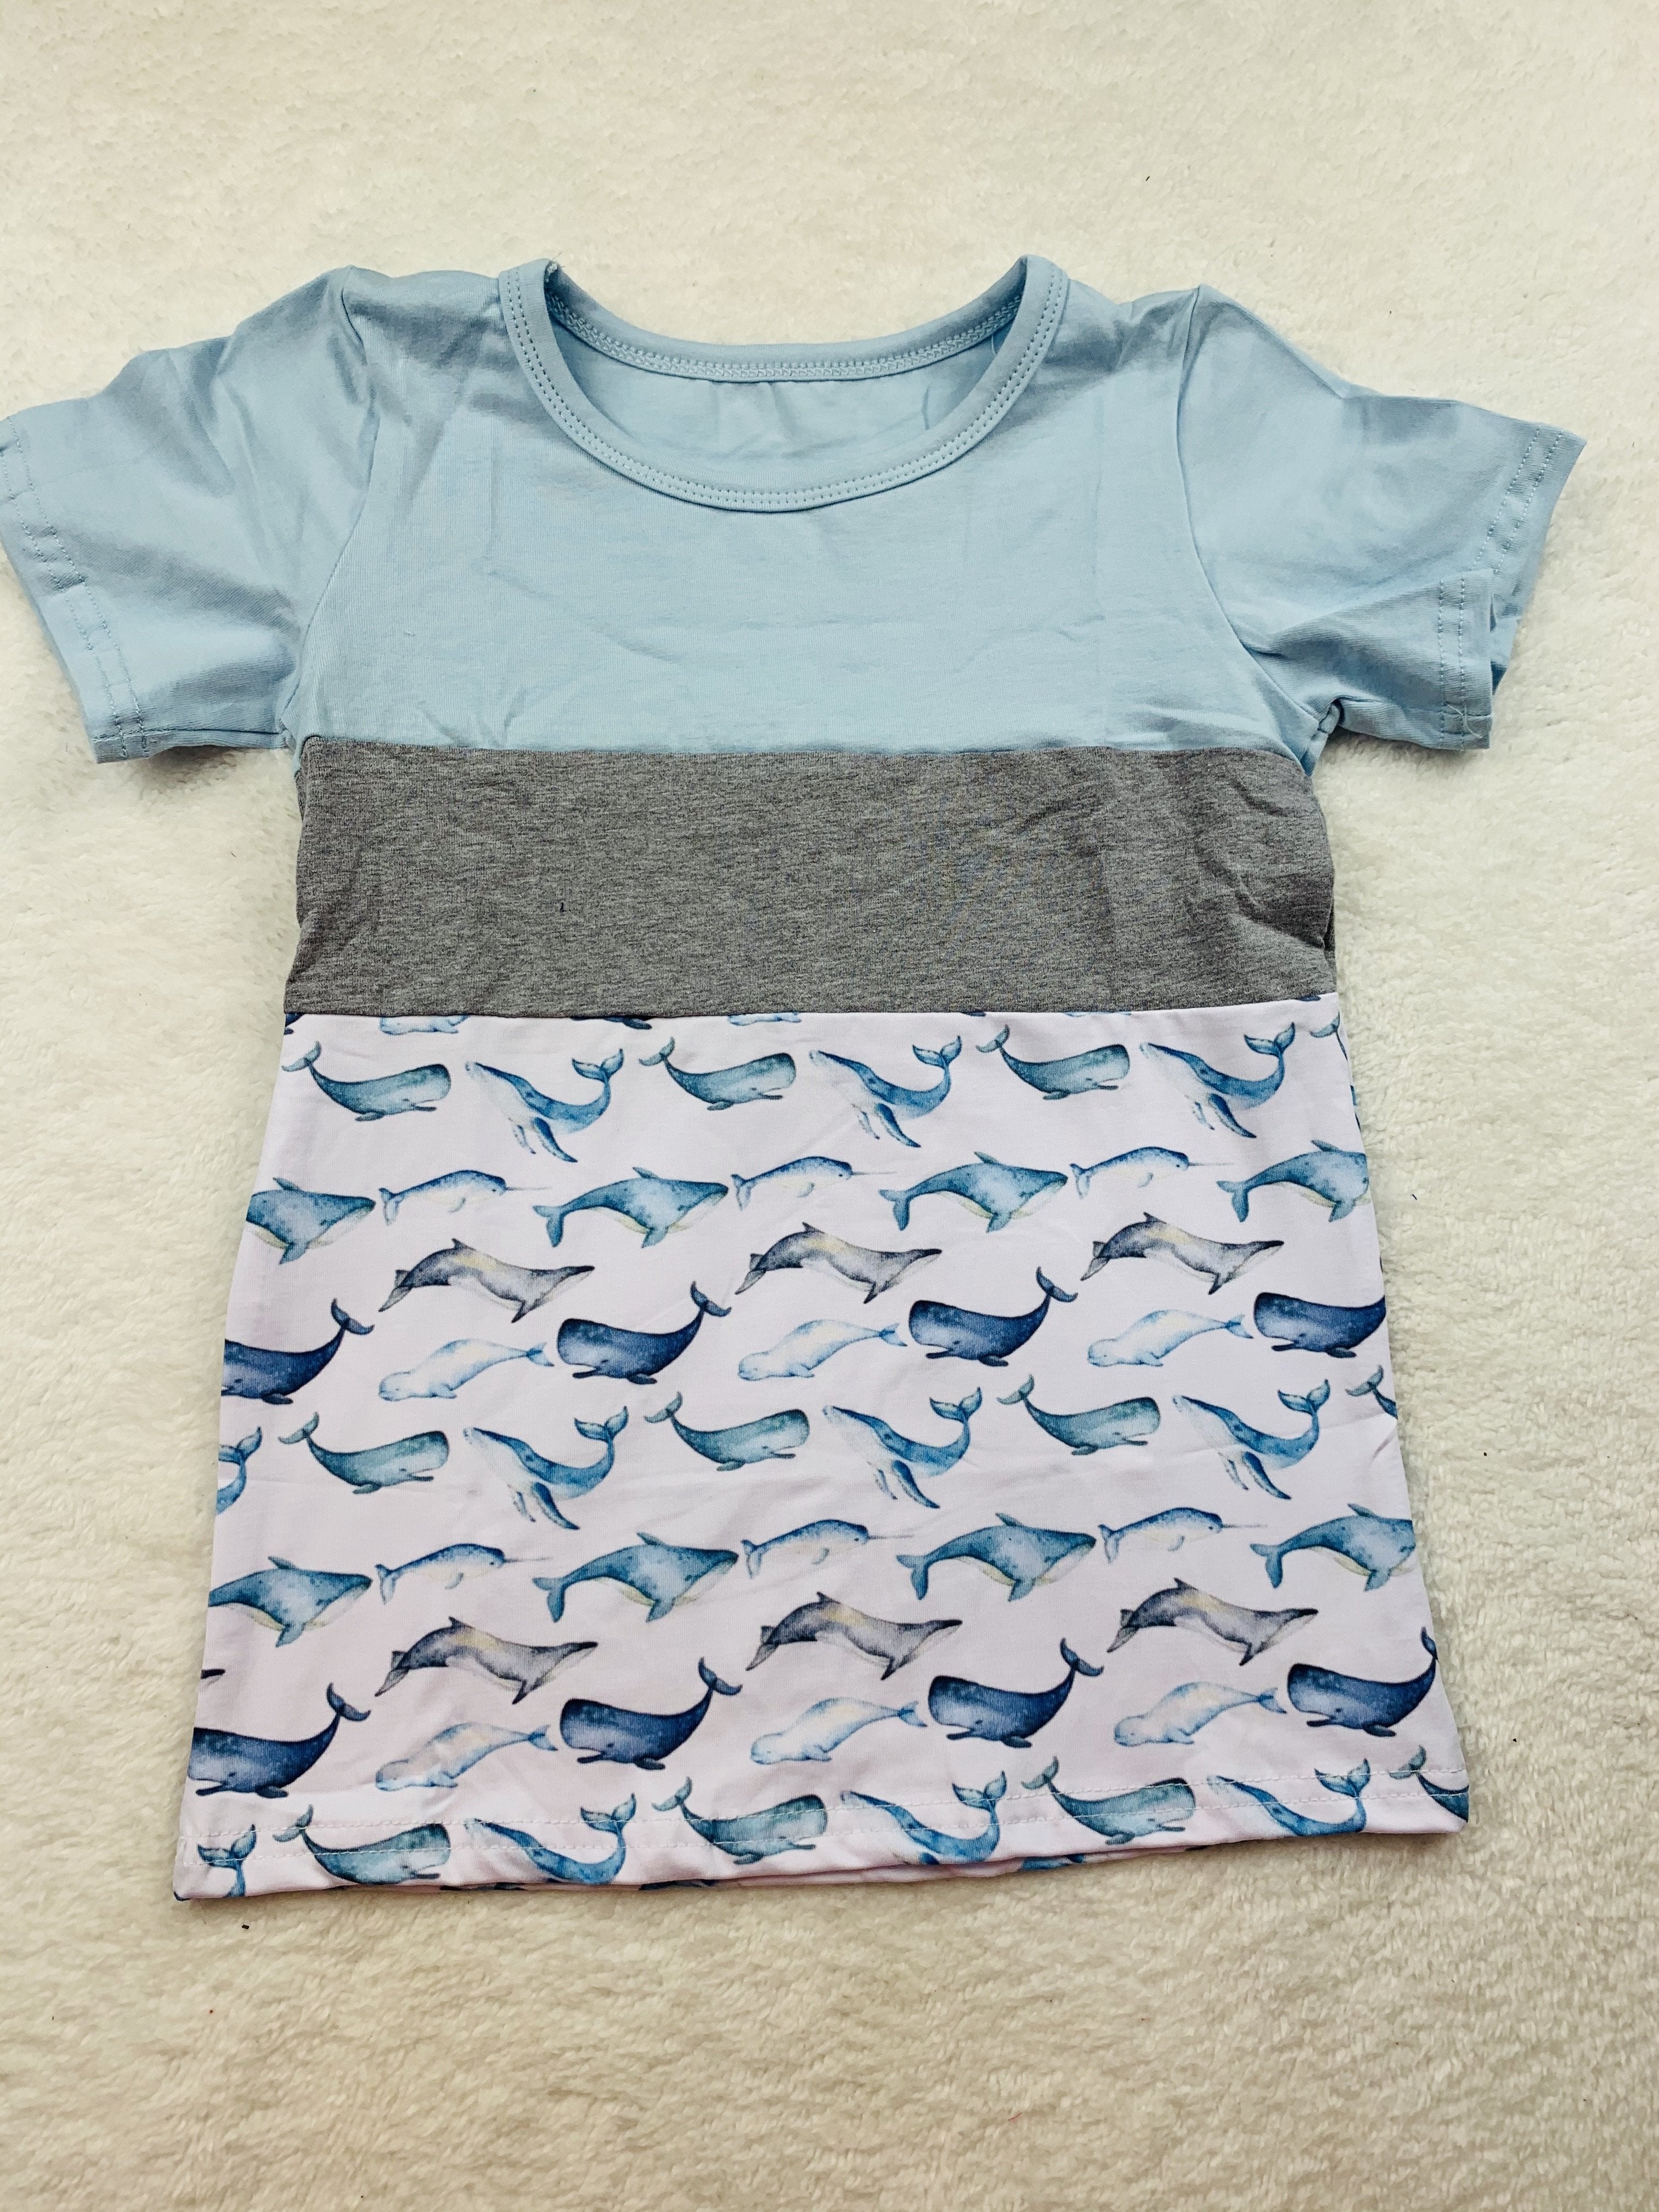 Sea Life shirt (coordinates with Merlife set/dress)